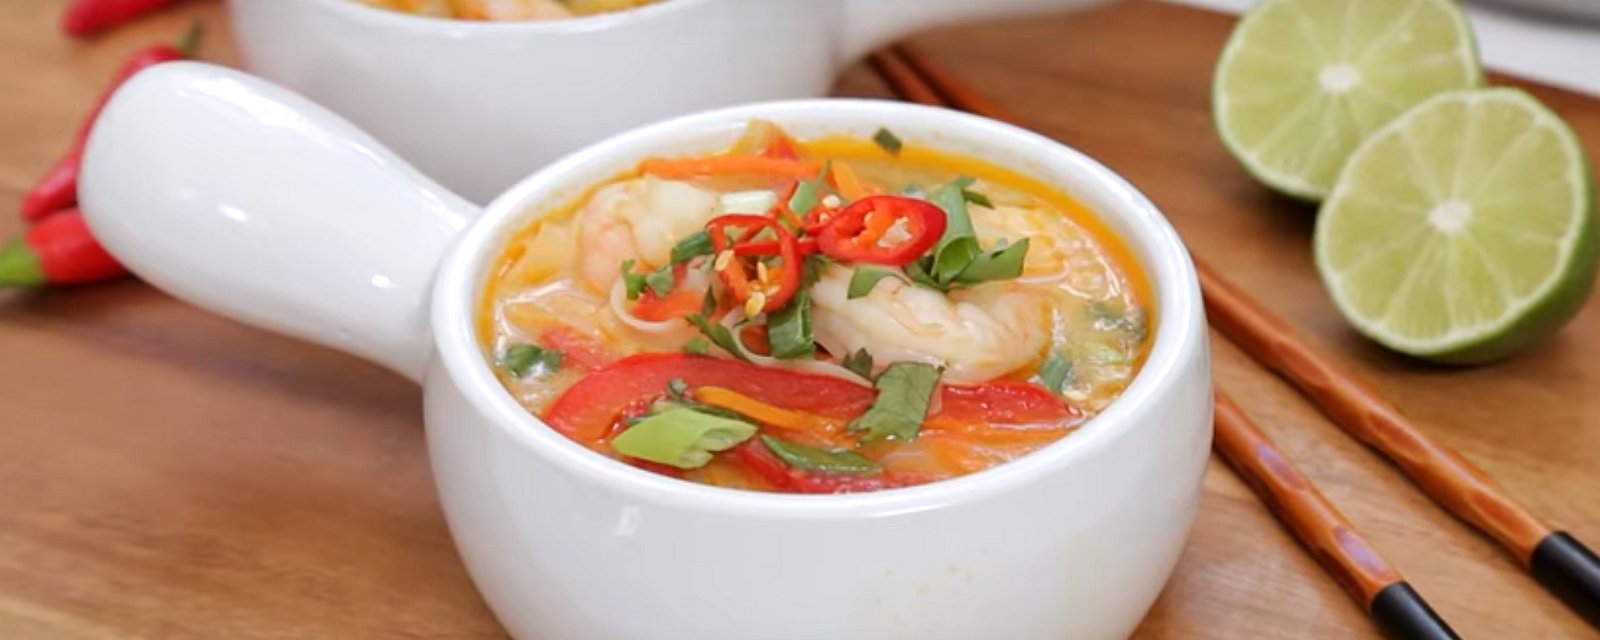 Soupe thaï aux crevettes qui se prépare en un rien de temps